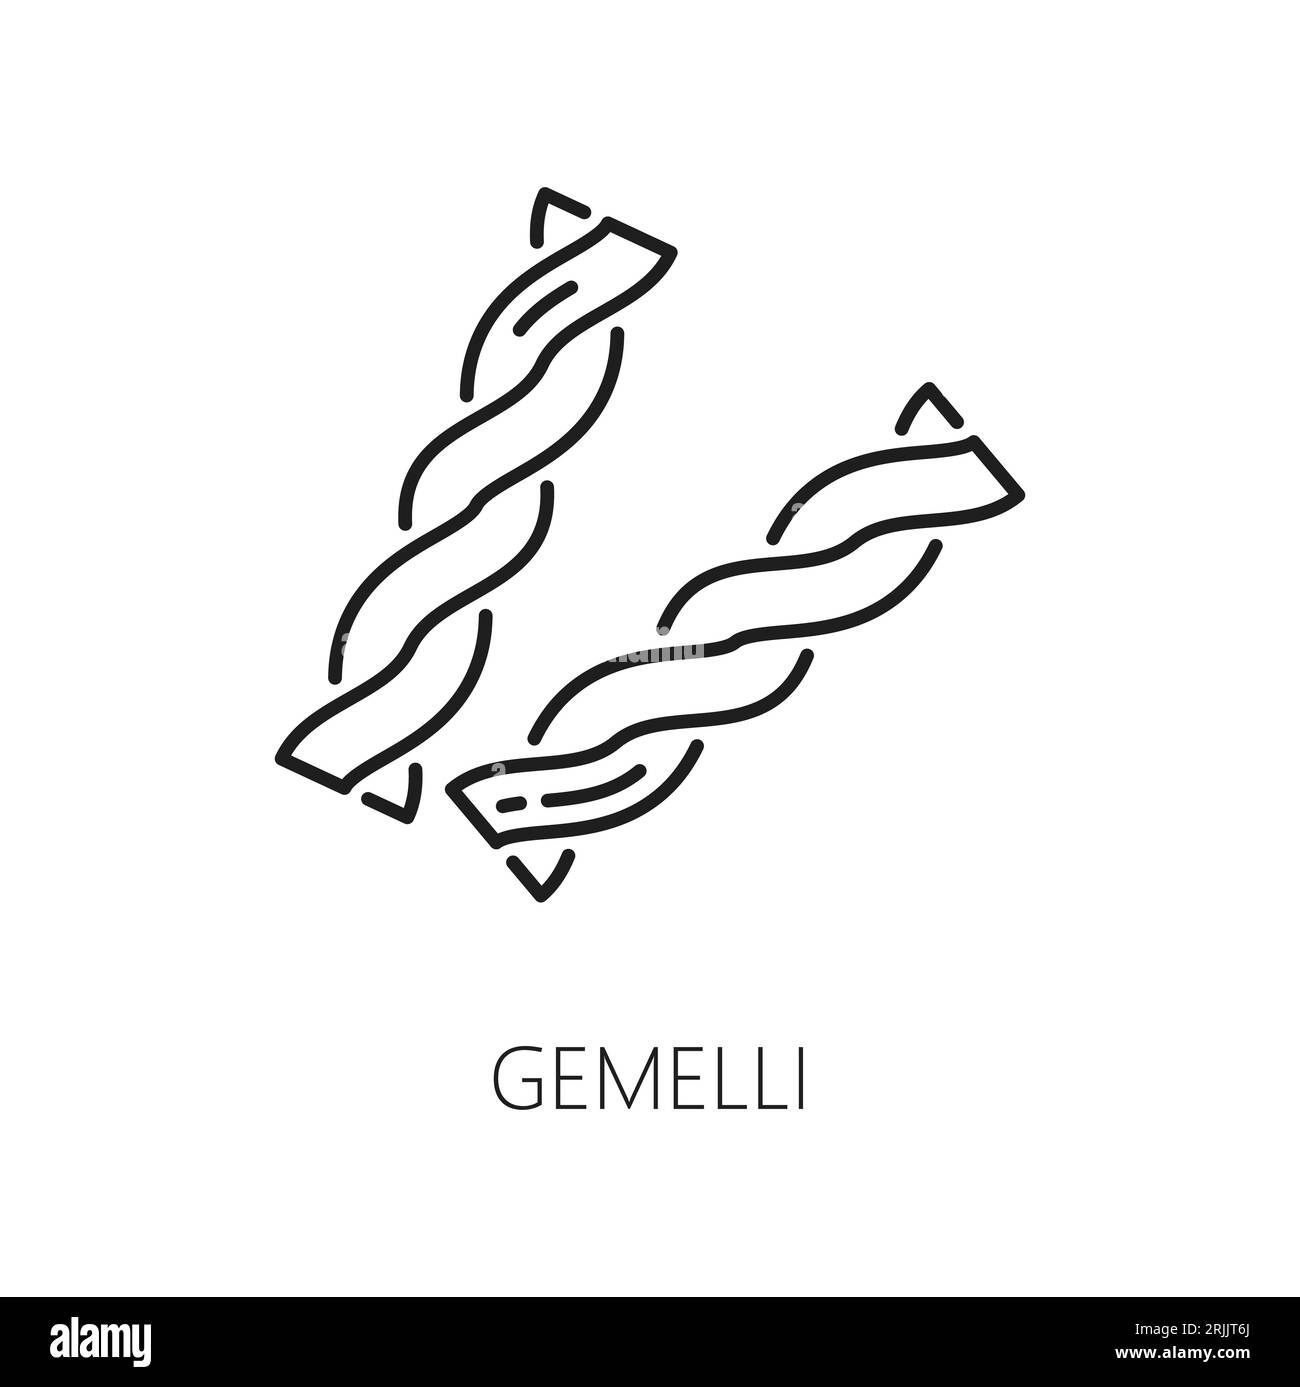 Gemelli Spiral Pasta Typ isolierte Kontur Symbol. Vector italienische Küche, gedrehte Stangen hausgemachte Nudel, Boden Teig Produkt Stock Vektor